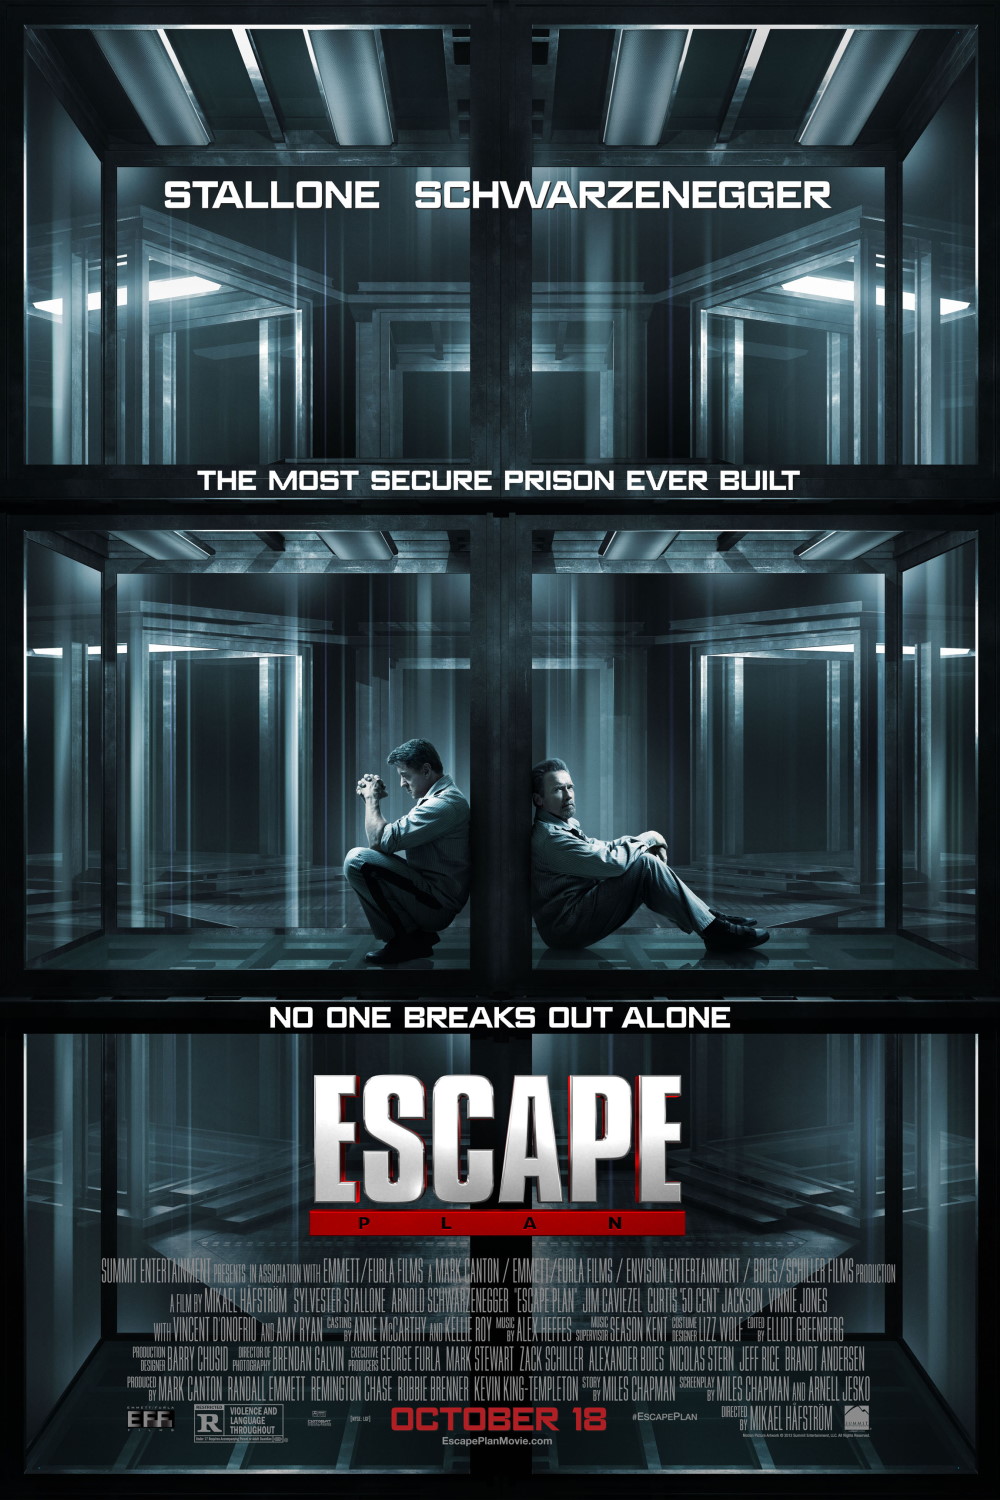 Escape Plan (2013) Poster